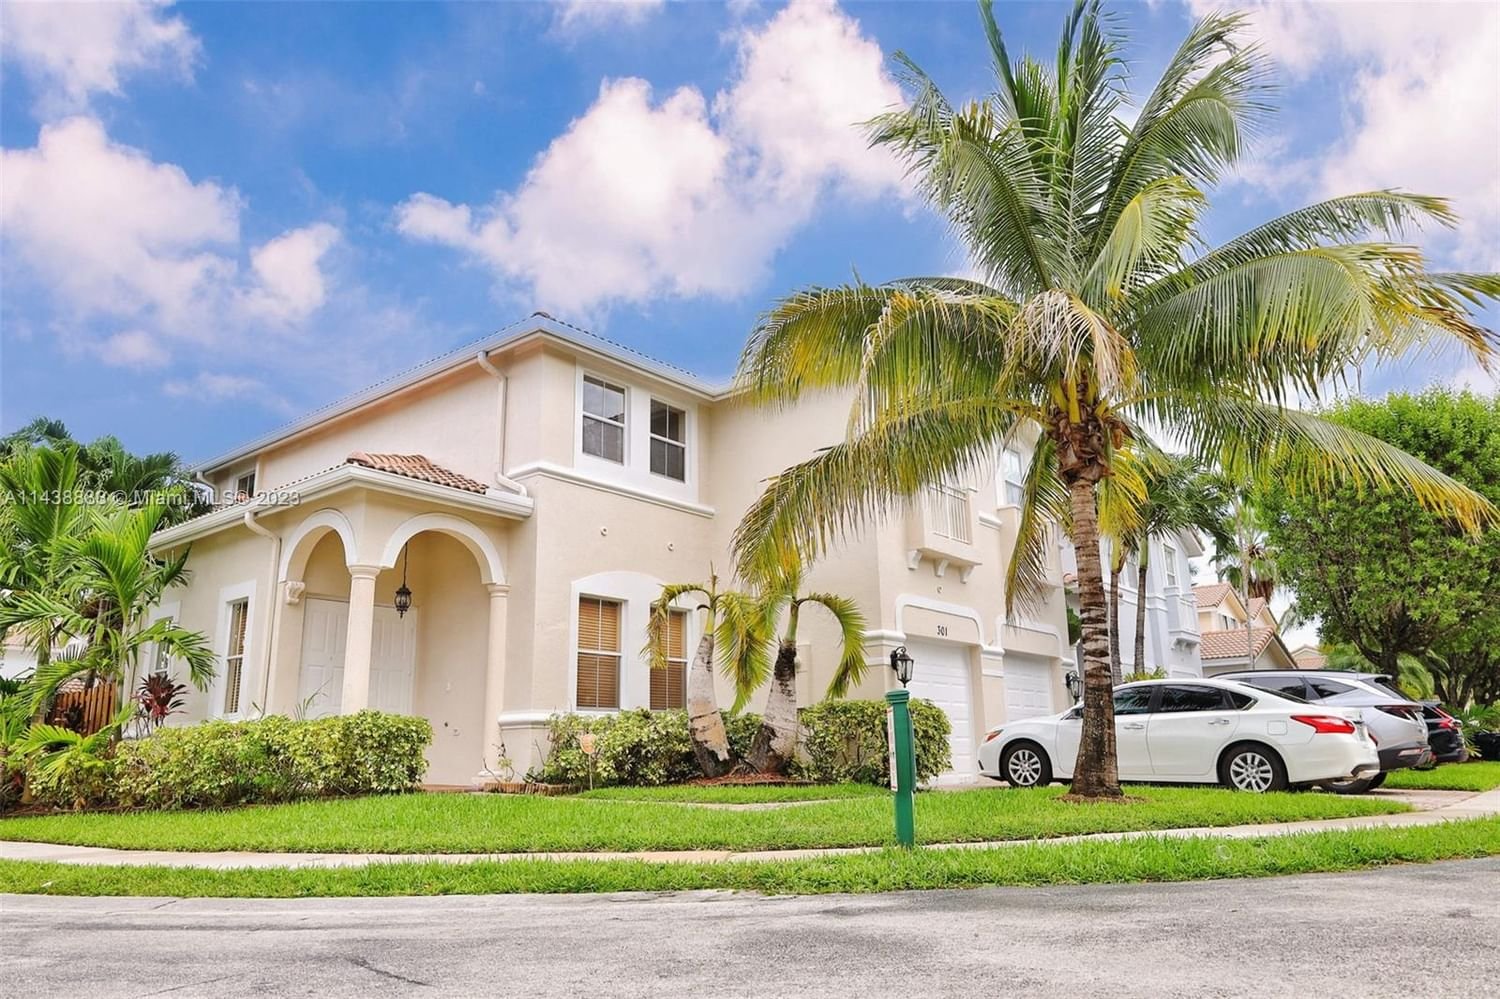 Real estate property located at 301 87th Path, Miami-Dade County, CENTURY VILLAS, Miami, FL